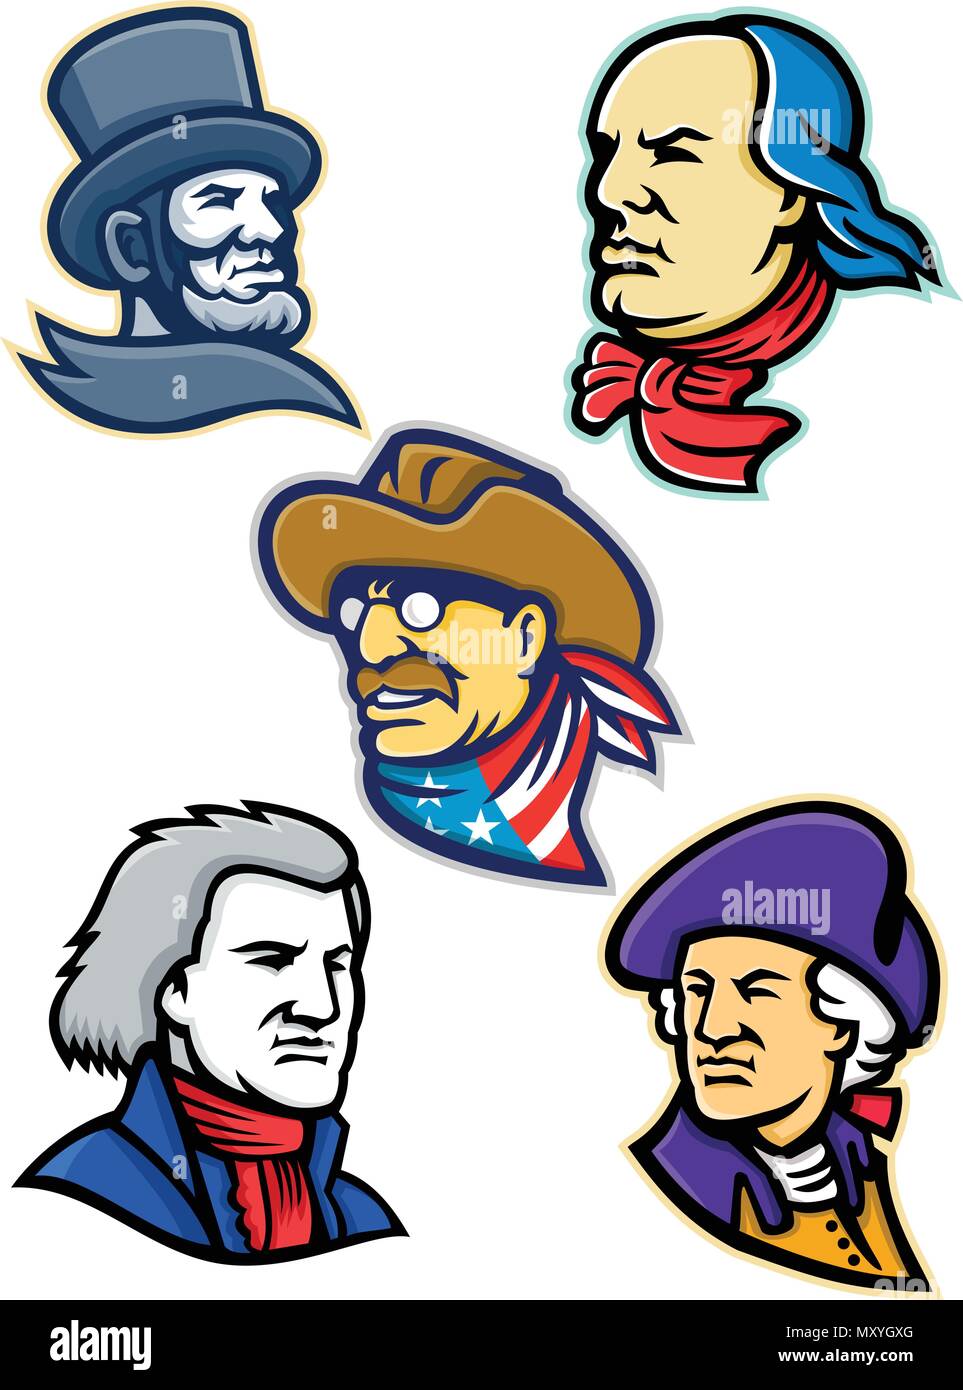 Icona di mascotte illustrazione gruppo delle teste dei presidenti americani, patriota, eroi e più come Abramo Lincoln, Benjamin Franklin,Theodore Roosevelt Illustrazione Vettoriale